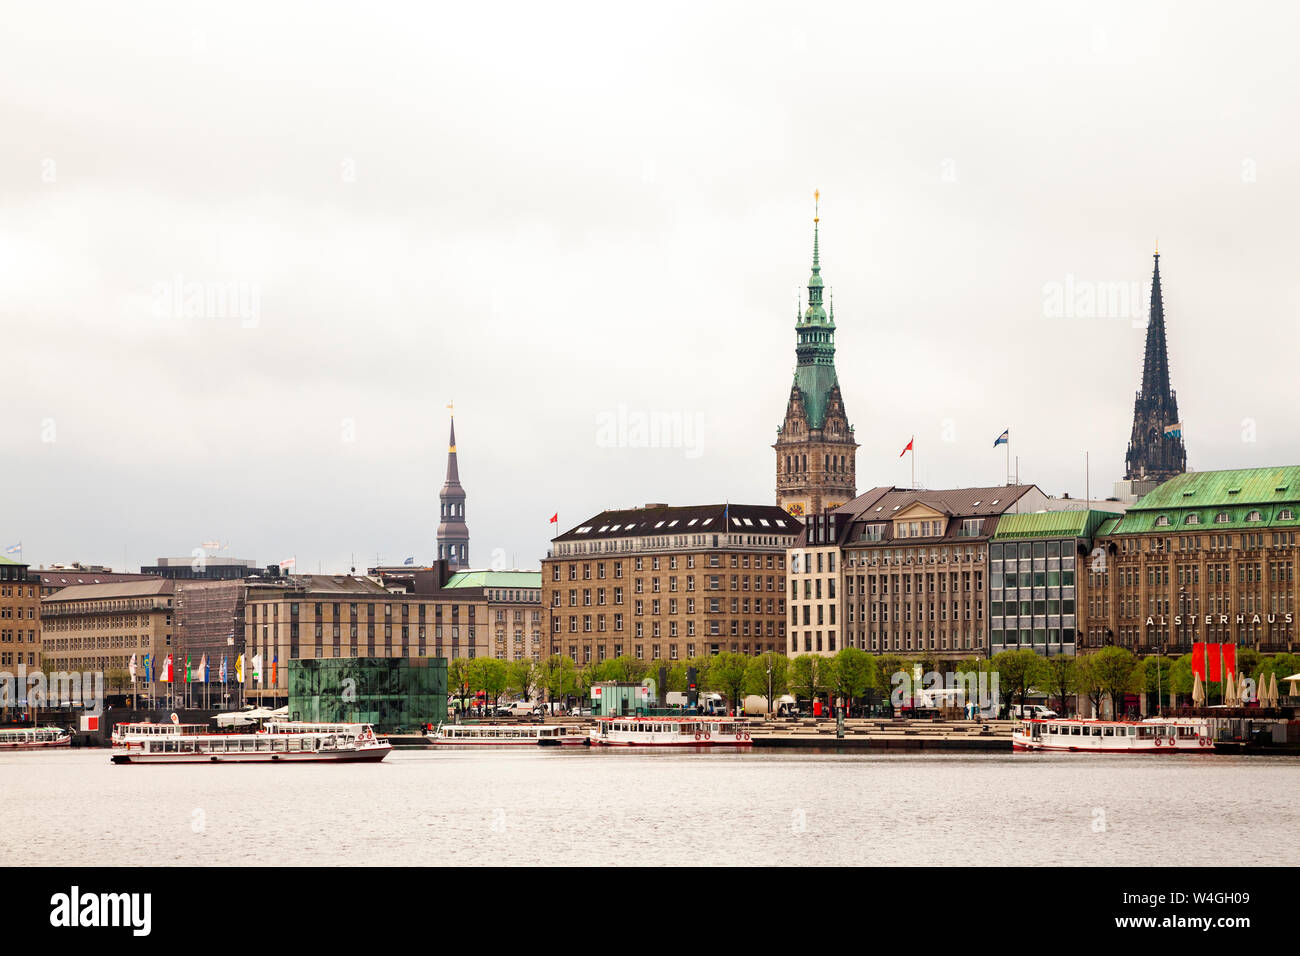 Vista de la ciudad con el ayuntamiento y St Nikolai Memorial y el Alster en primer plano, Hamburgo, Alemania. Foto de stock